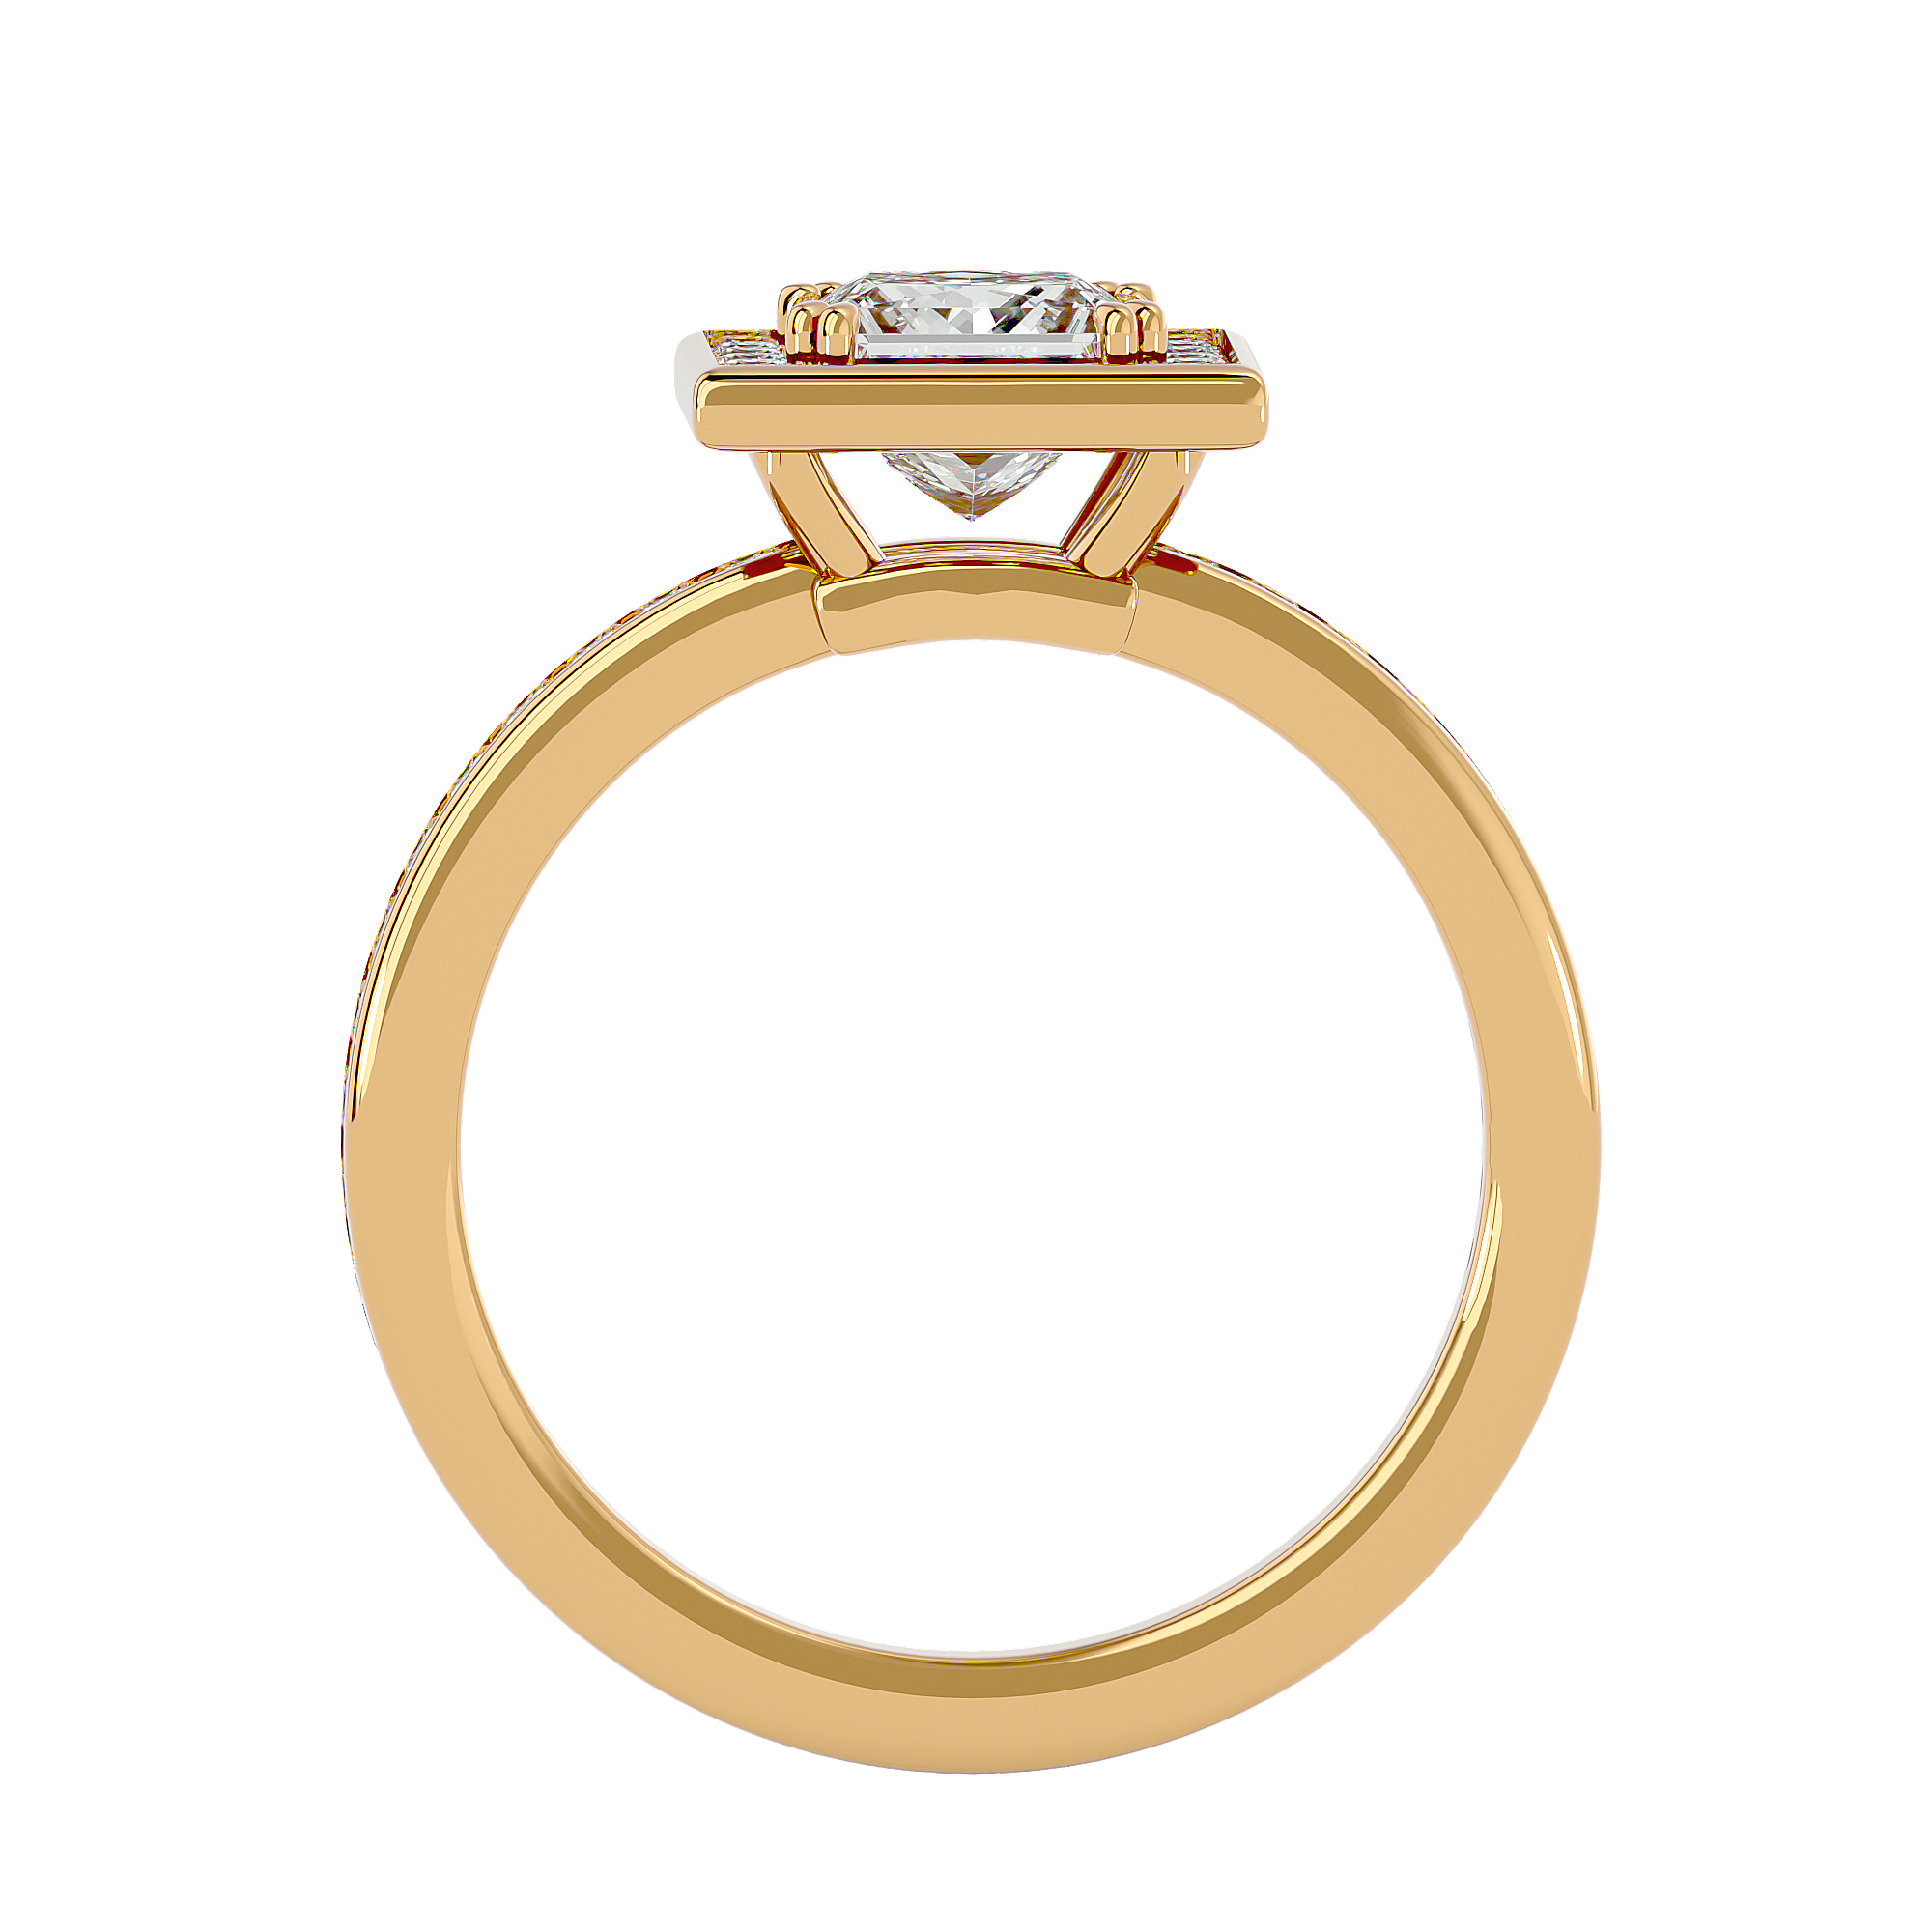 HOH Bethany Diamond Halo Ring